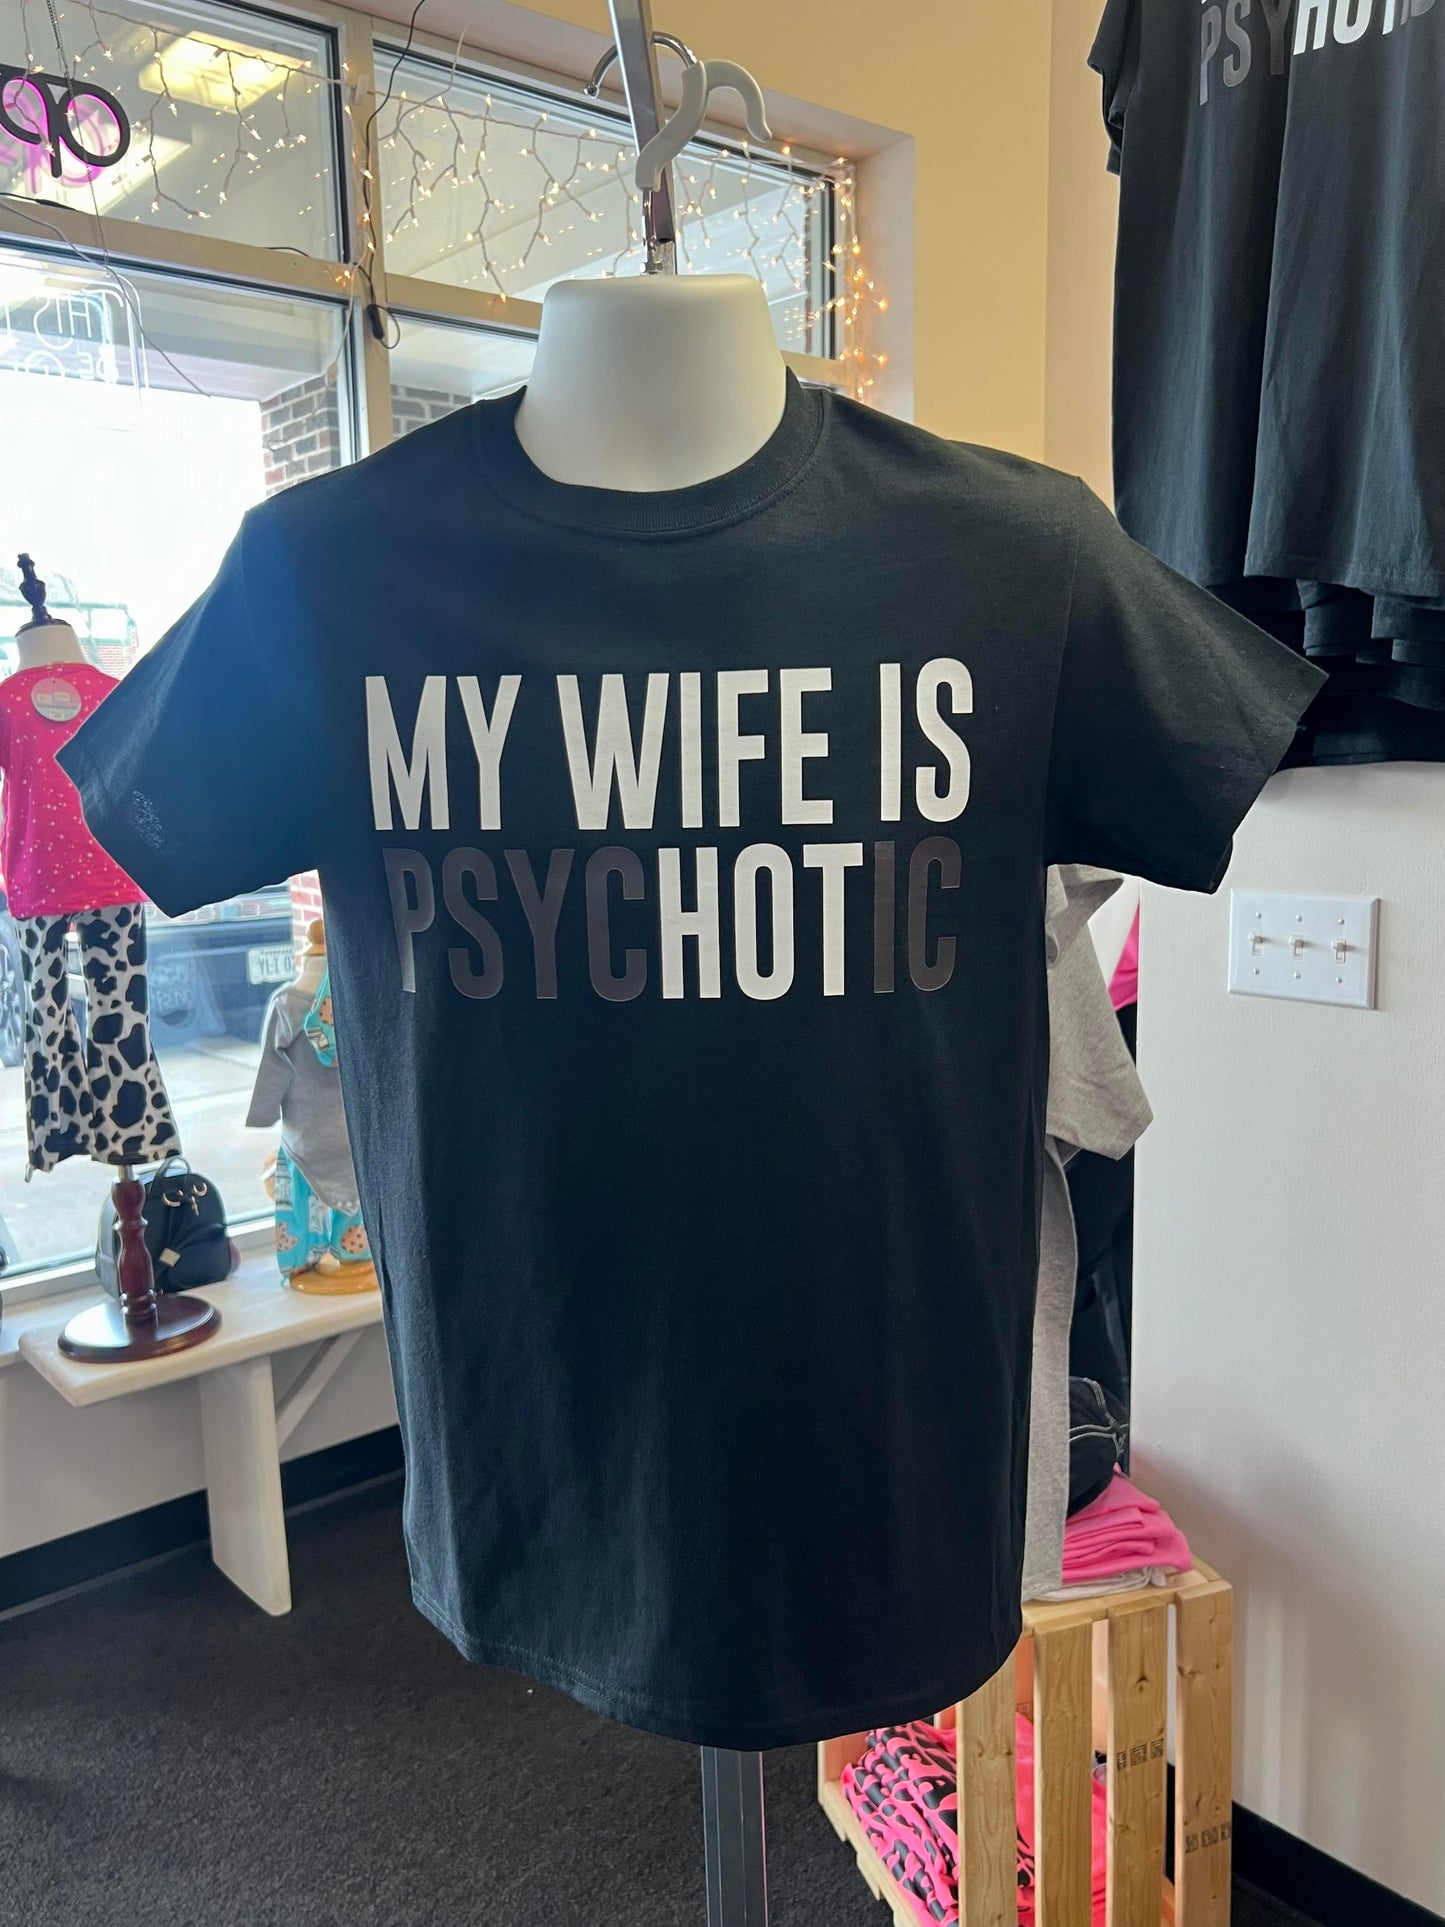 Men's My Wife is Psychotic Tee